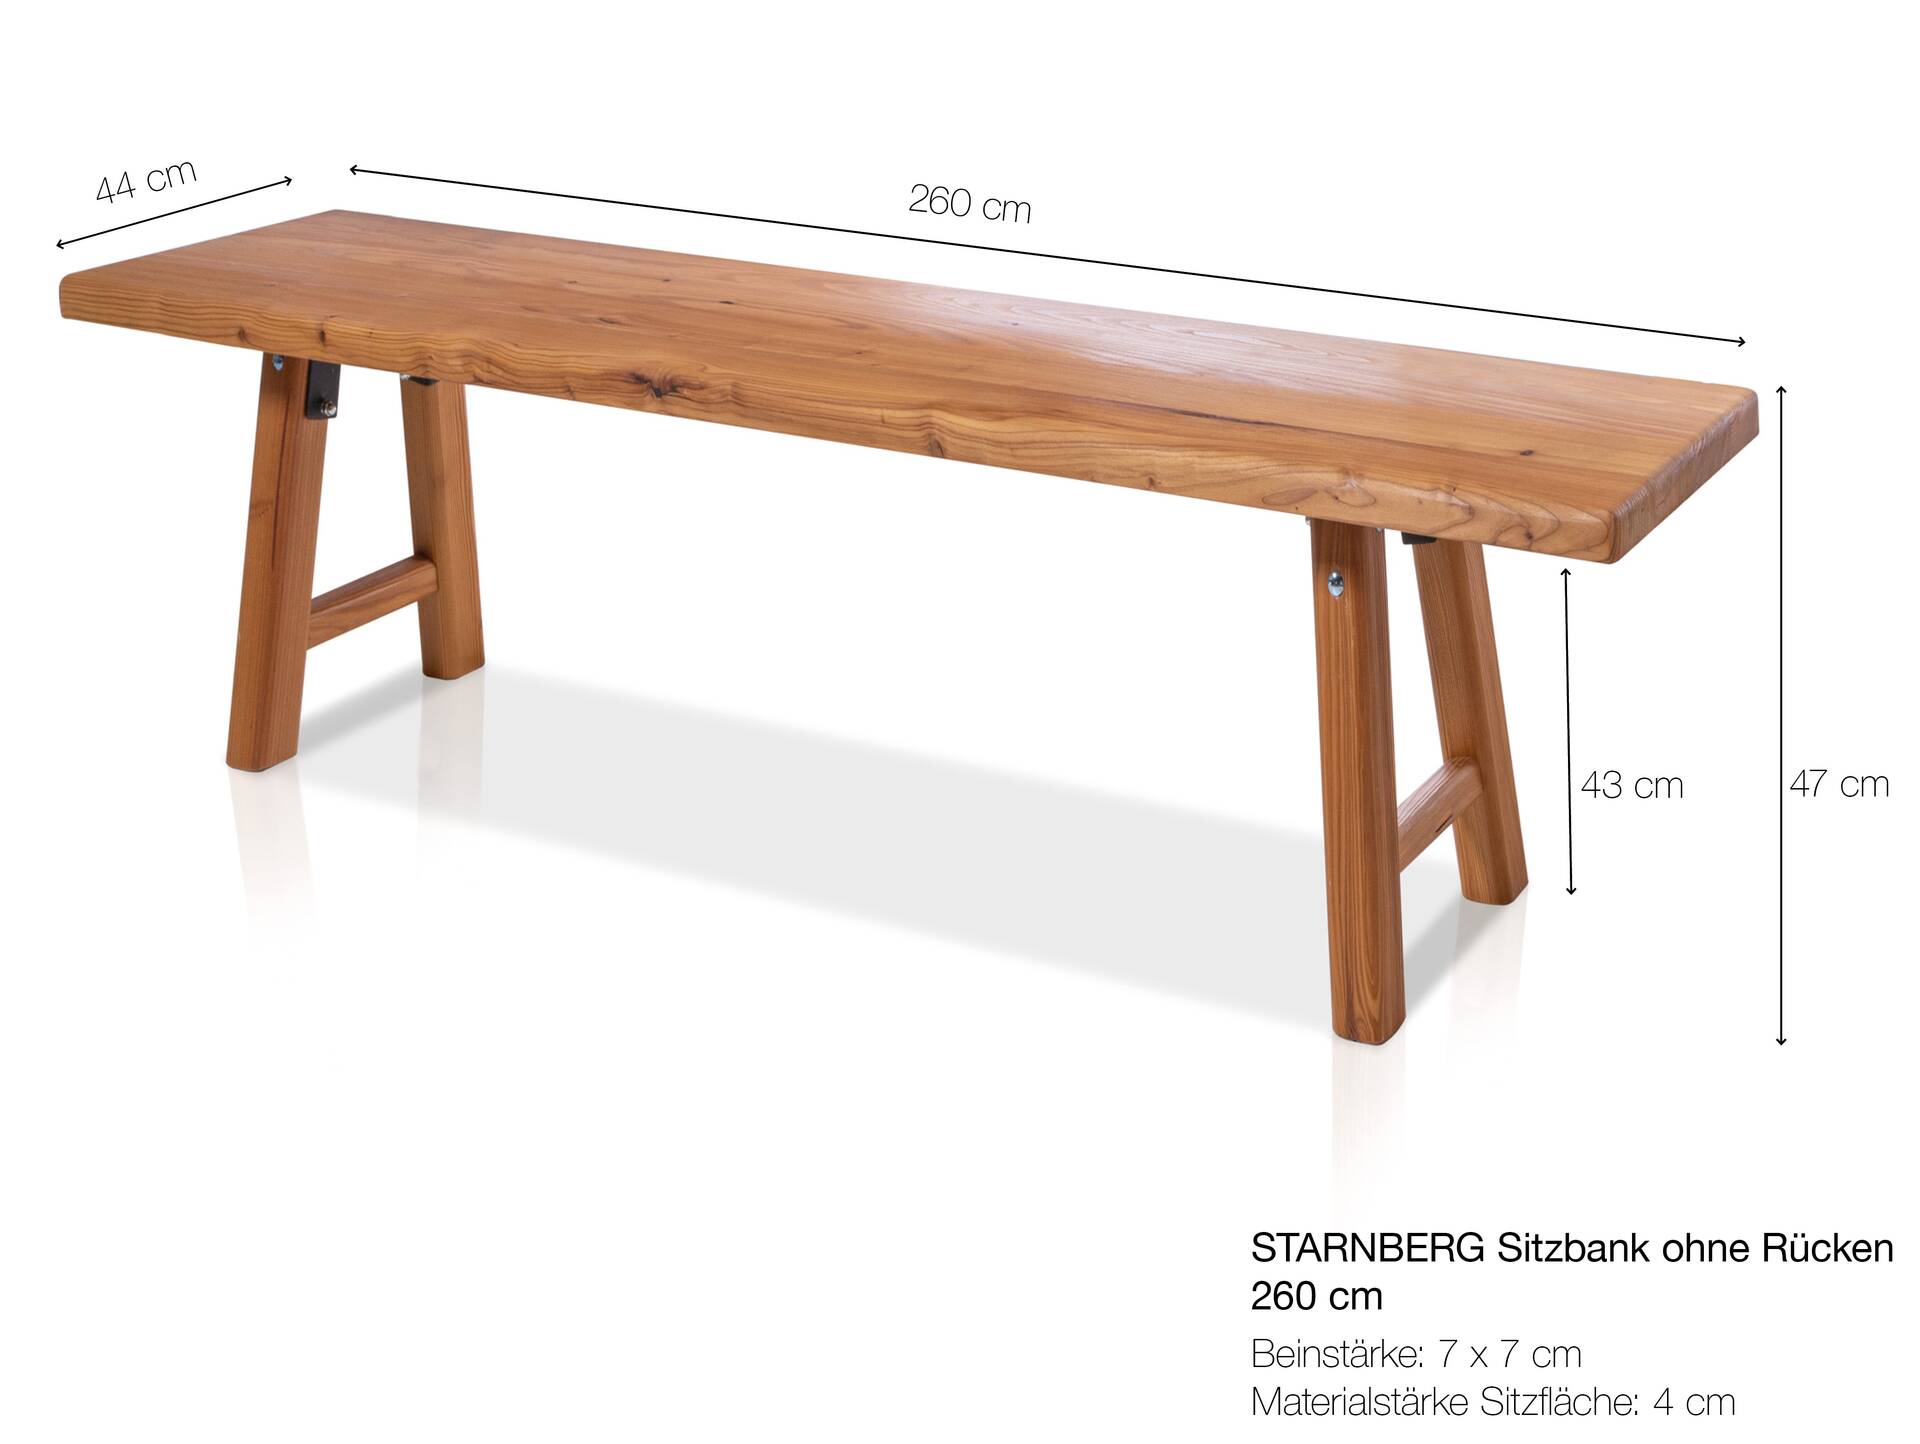 STARNBERG Sitzbank ohne Rücken, Material Massivholz, Lärche gedämpft 260 cm | geölt